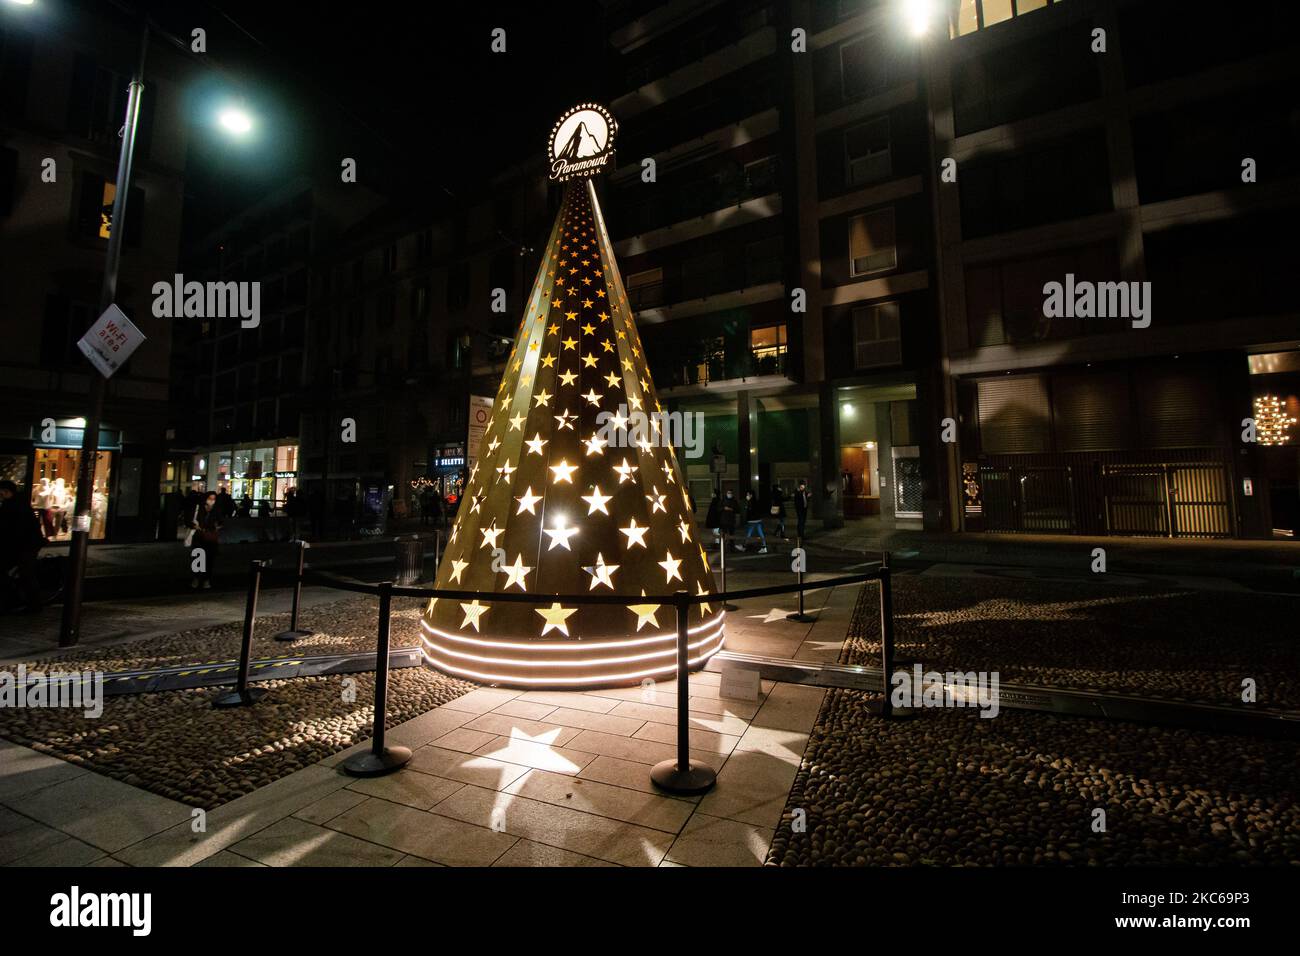 Eine allgemeine Ansicht des Weihnachtsbaums Albero delle Stelle vom Paramount Network für Natale Degli Alberi am 17. Dezember 2020 in Mailand, Italien. (Foto von Alessandro Bremec/NurPhoto) Stockfoto